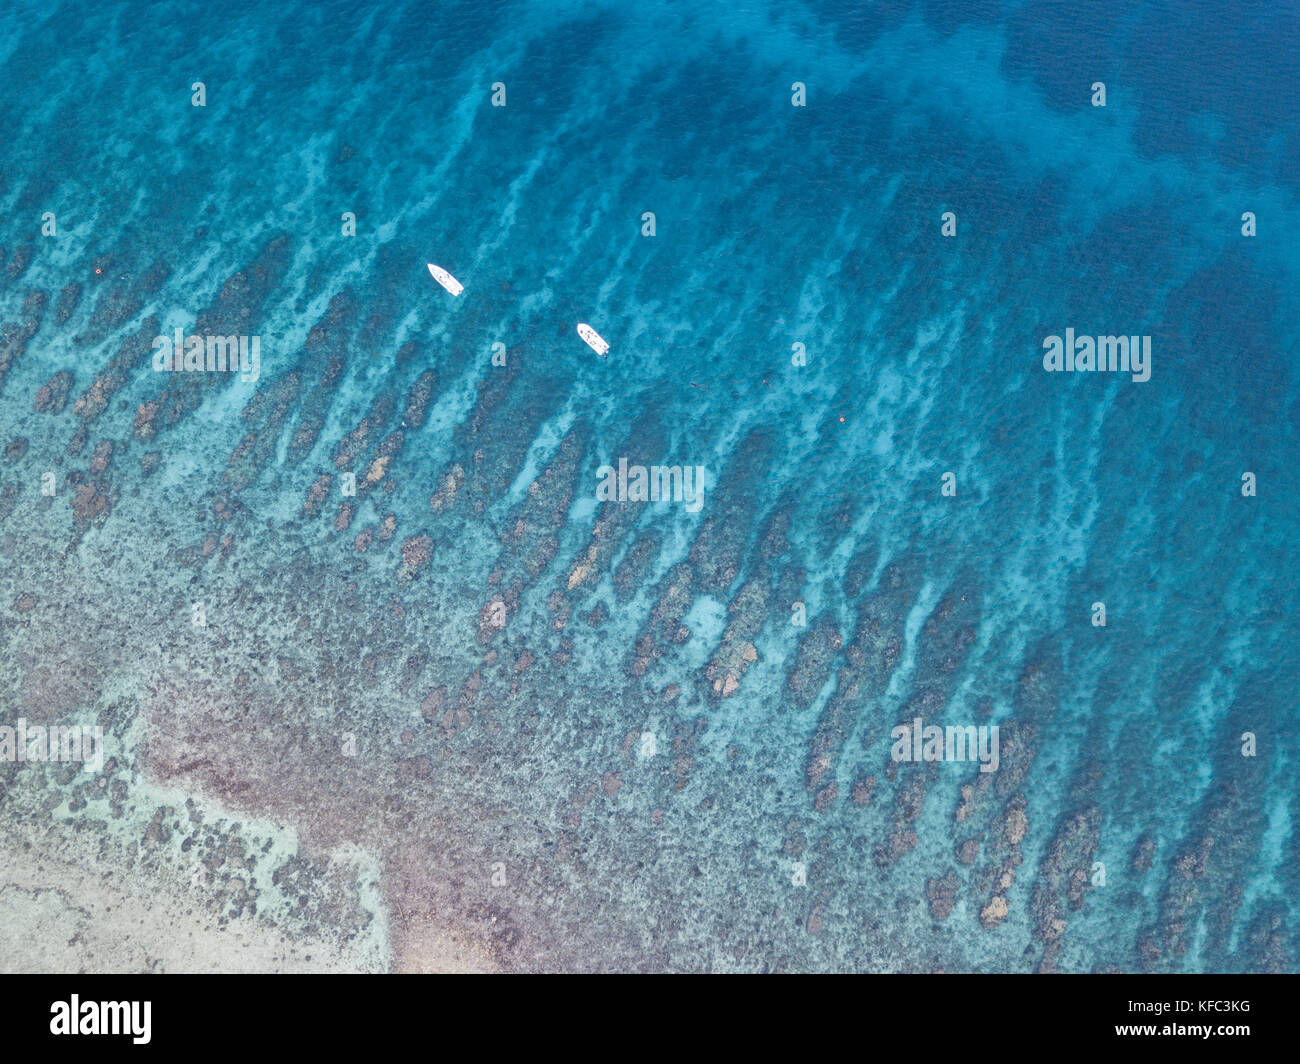 Una veduta aerea di una bellissima barriera corallina sul bordo di turneffe atoll al largo delle coste del Belize. questa zona dei Caraibi è estremamente biodiversi. Foto Stock